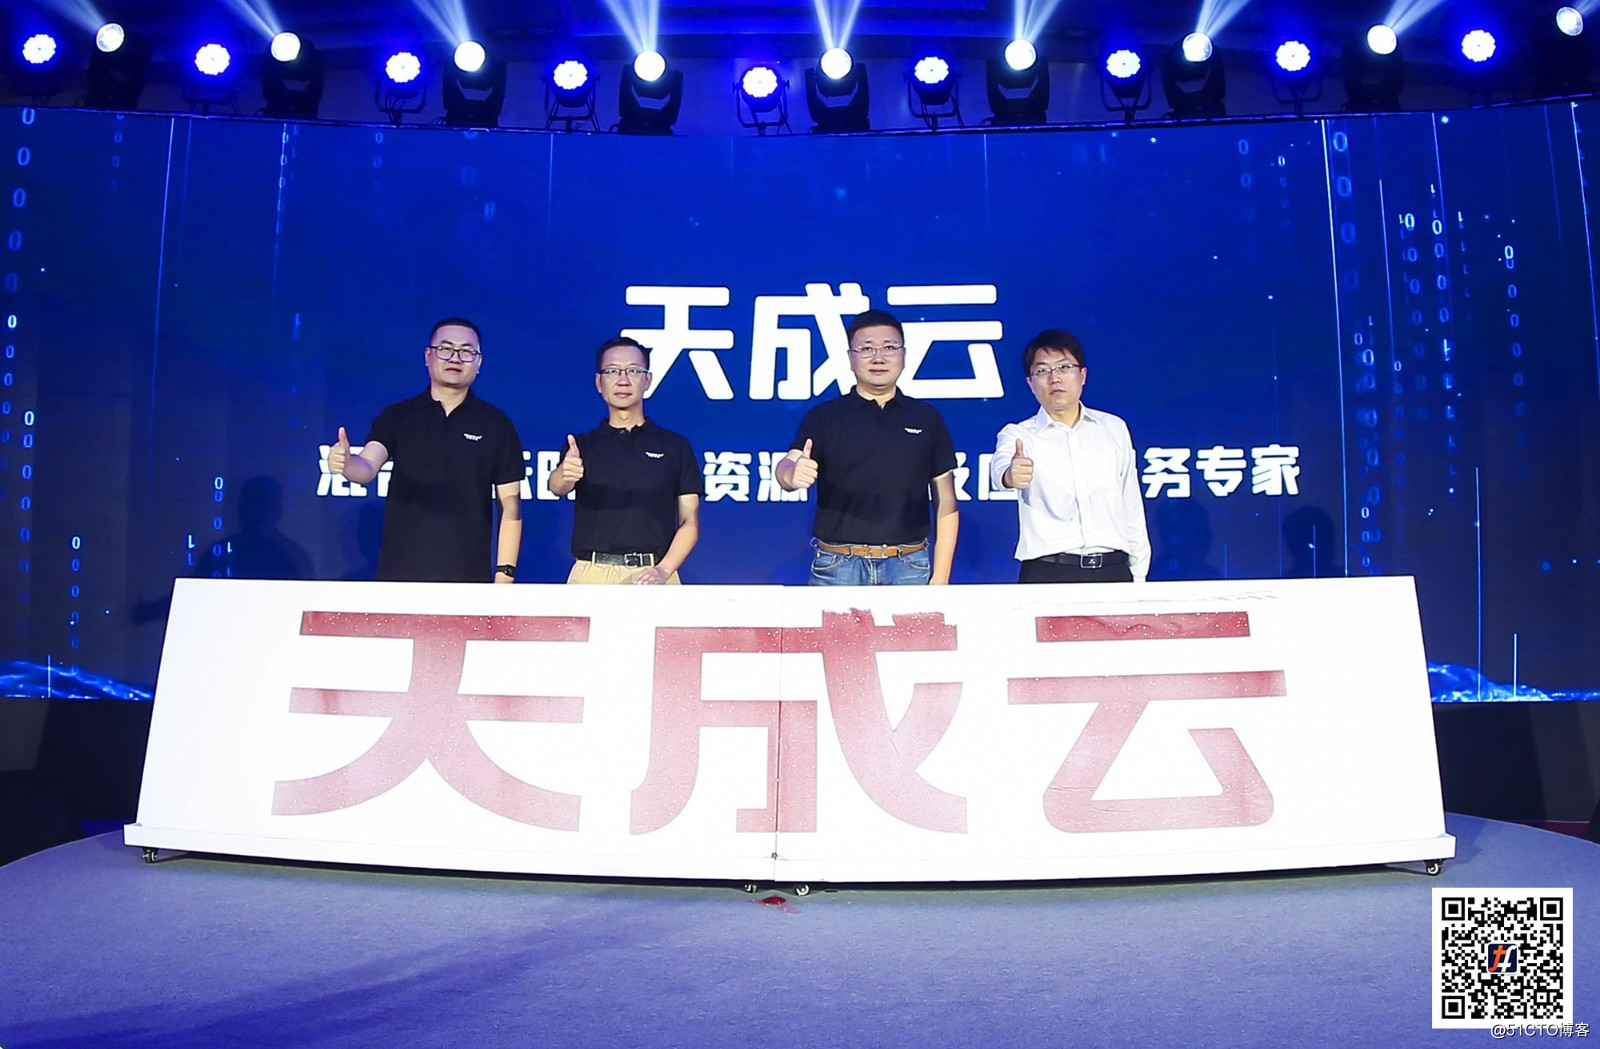 Lanzamiento de la marca "Tiancheng Cloud": el tejido de tungsteno ayuda al código abierto y al desarrollo ecológico abierto